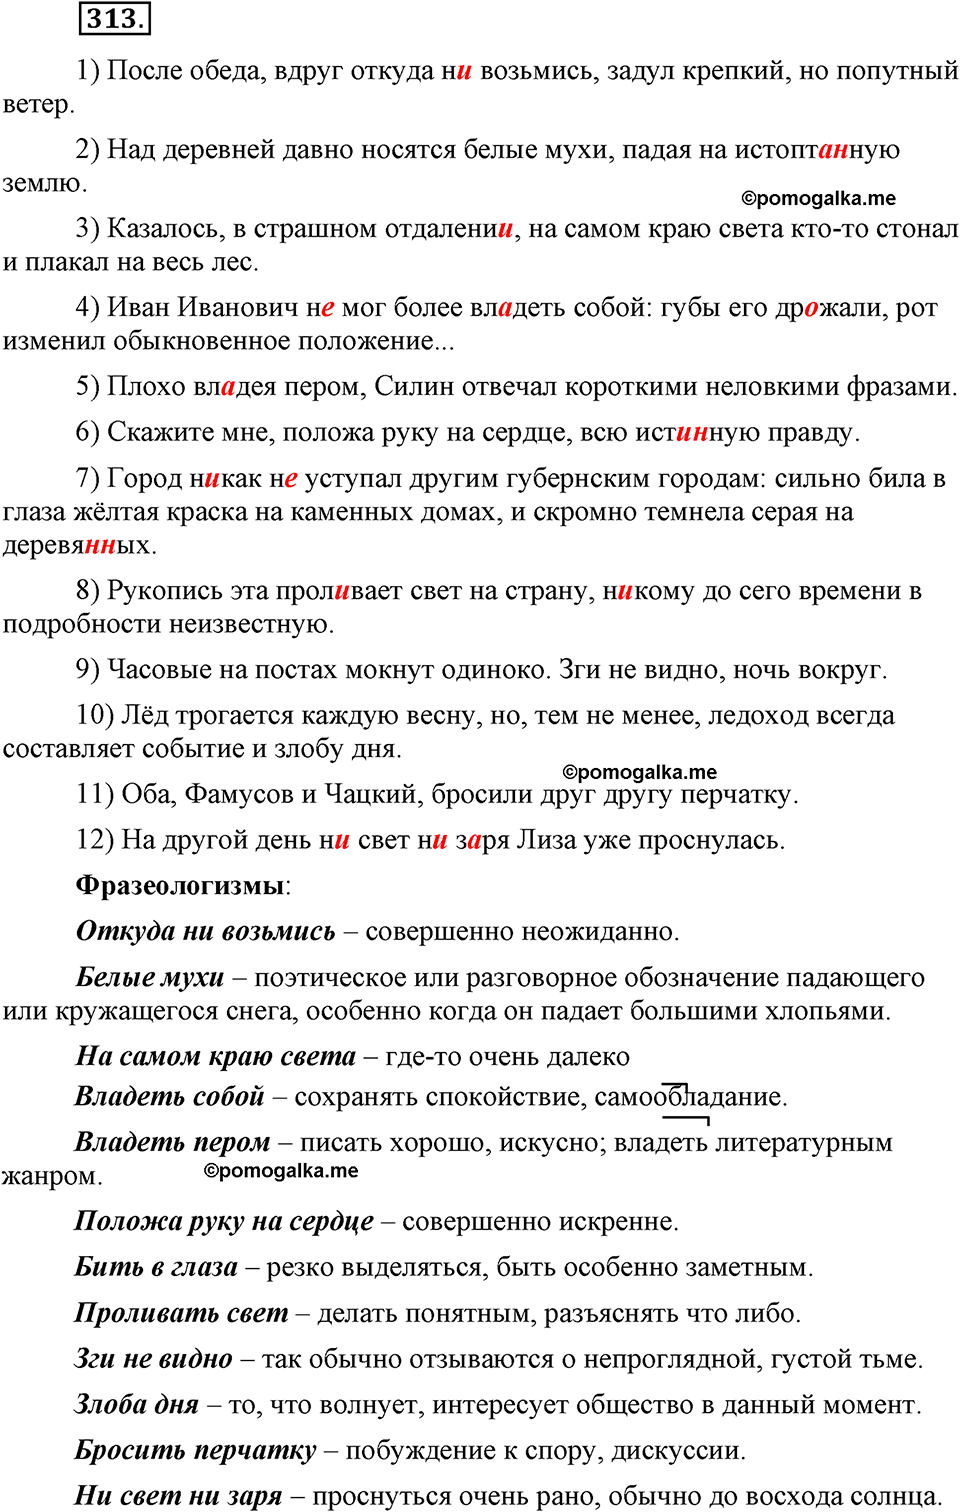 страница 145 номер 313 русский язык 9 класс Бархударов 2011 год